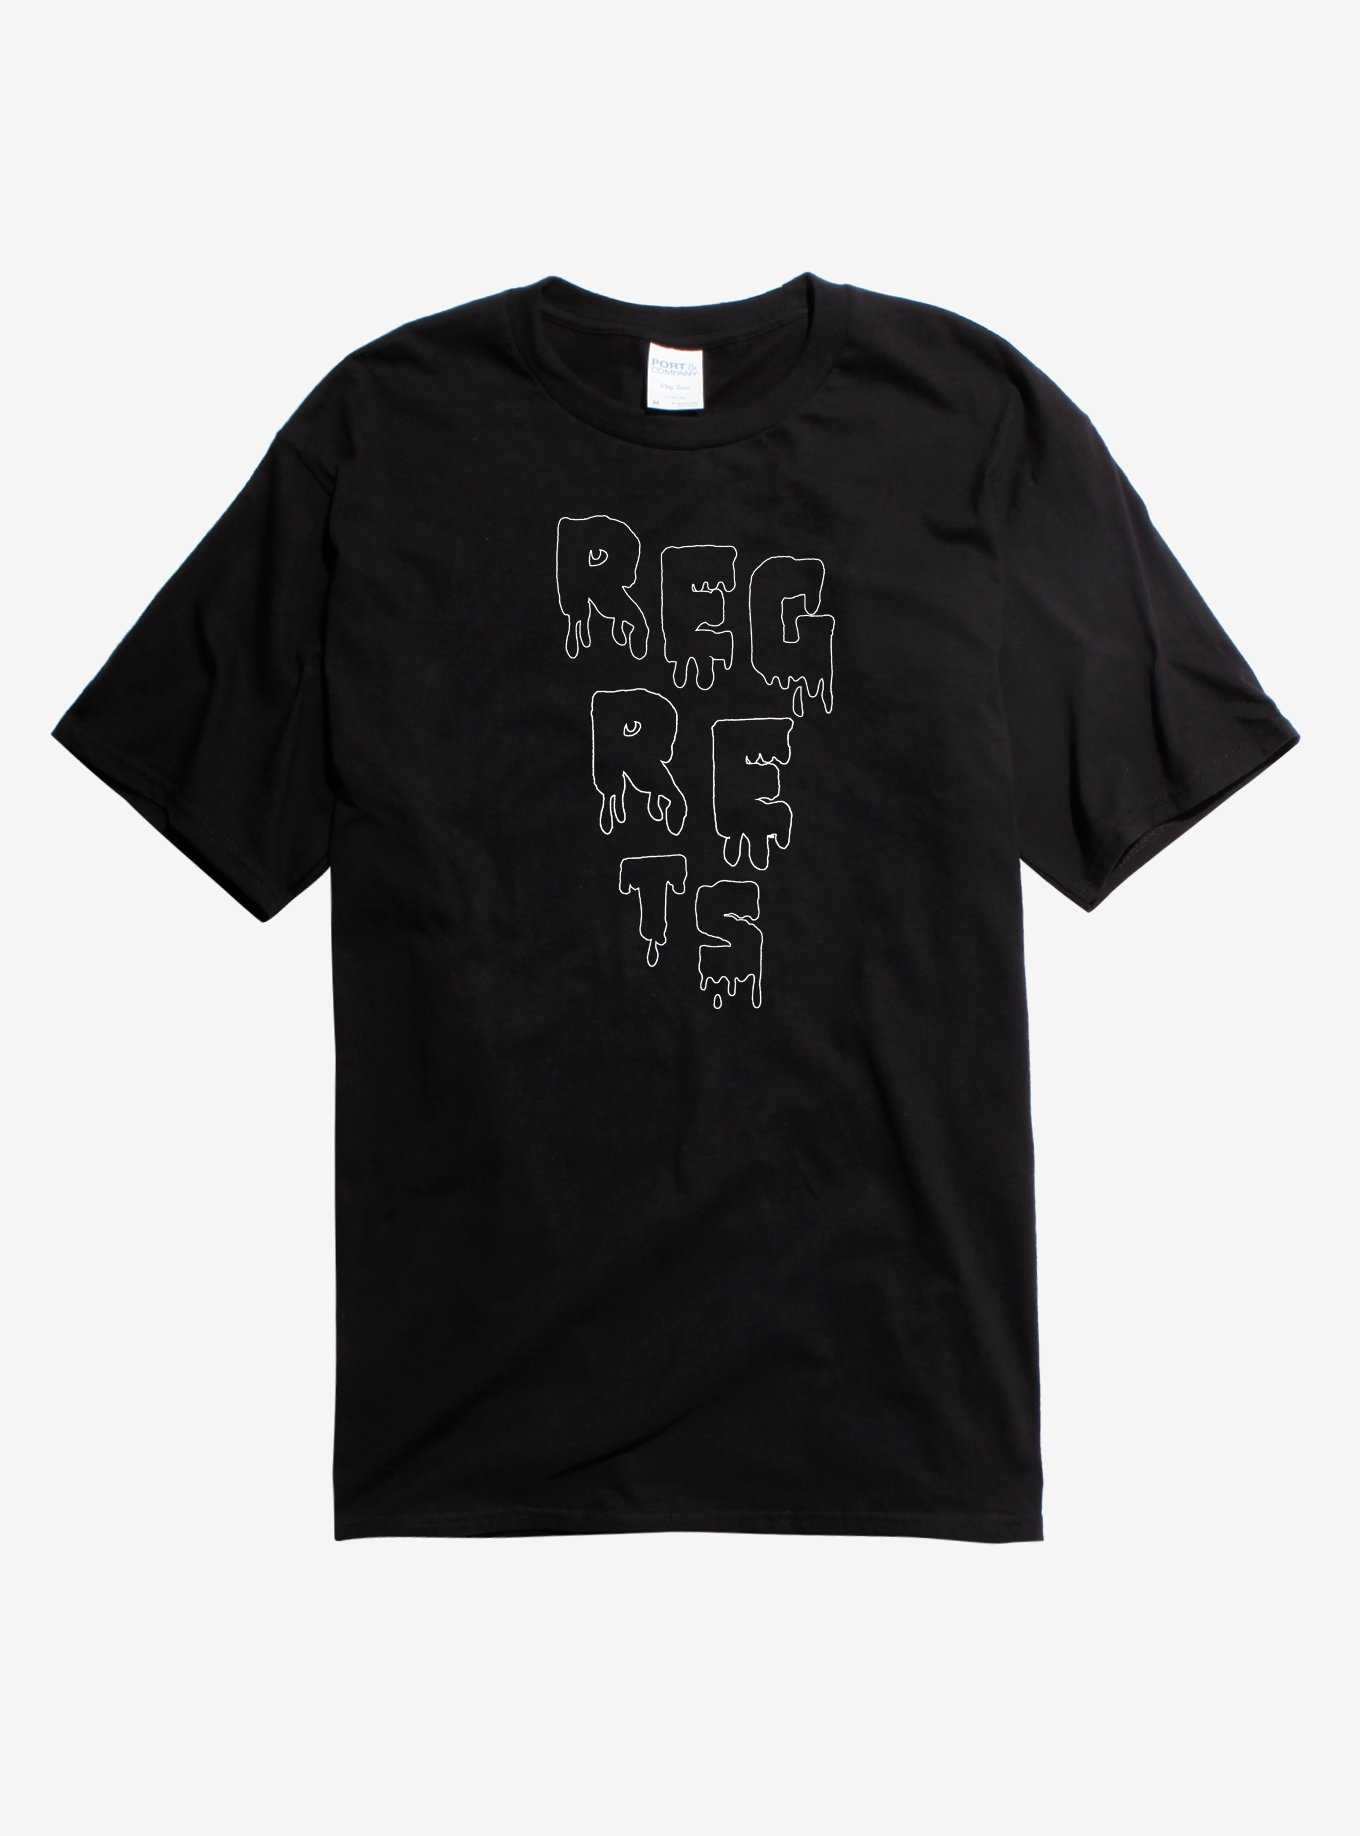 Reg-Re-Ts T-Shirt, , hi-res